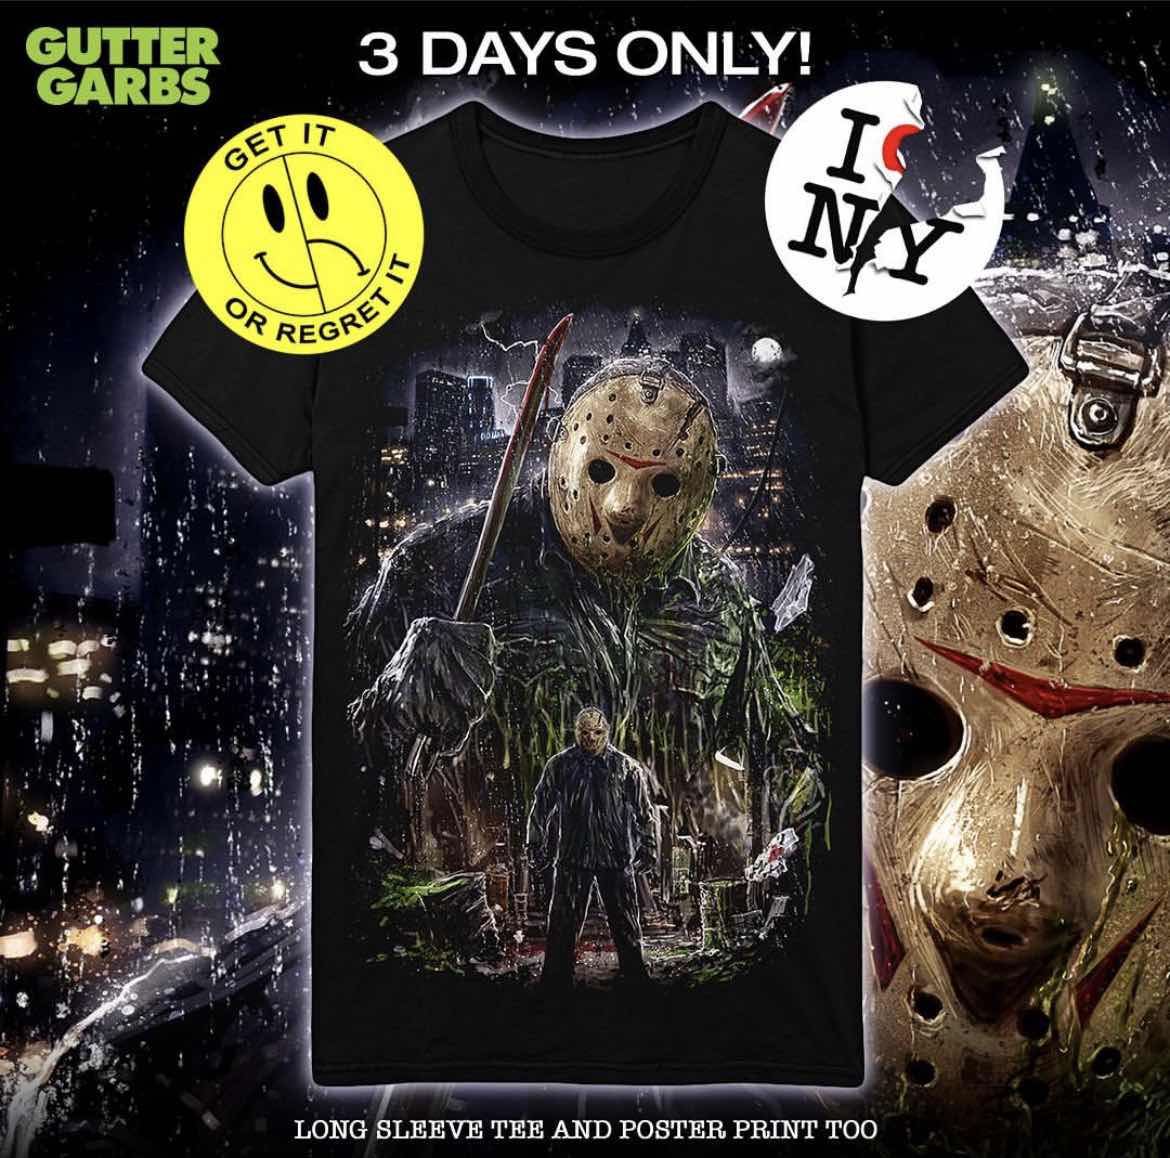 Gutter Garbs Unleashes Jason On Manhattan With New Shirt Design